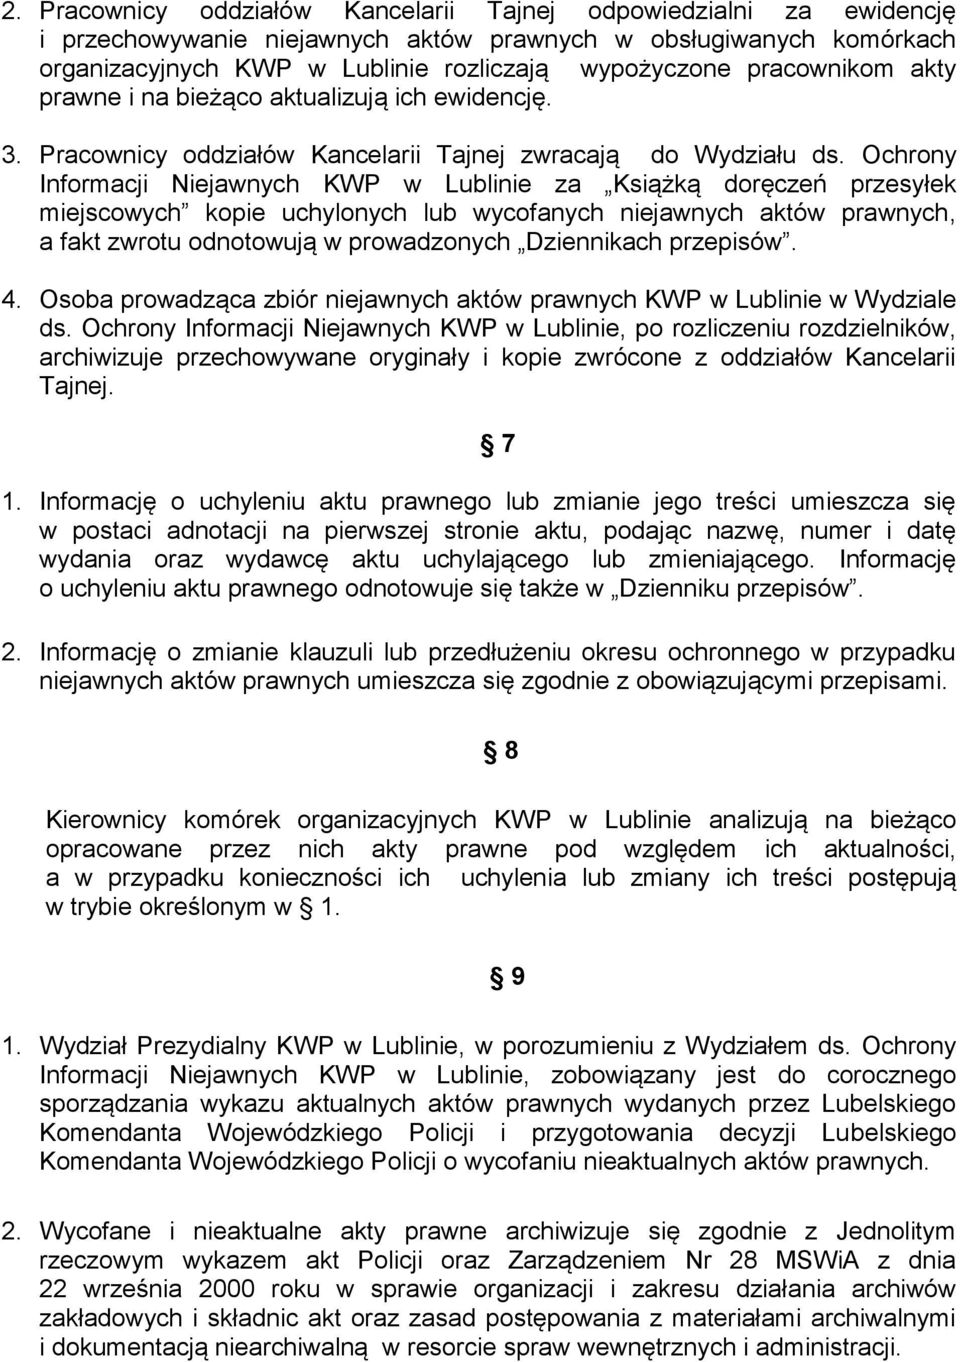 Ochrony Informacji Niejawnych KWP w Lublinie za Książką doręczeń przesyłek miejscowych kopie uchylonych lub wycofanych niejawnych aktów prawnych, a fakt zwrotu odnotowują w prowadzonych Dziennikach